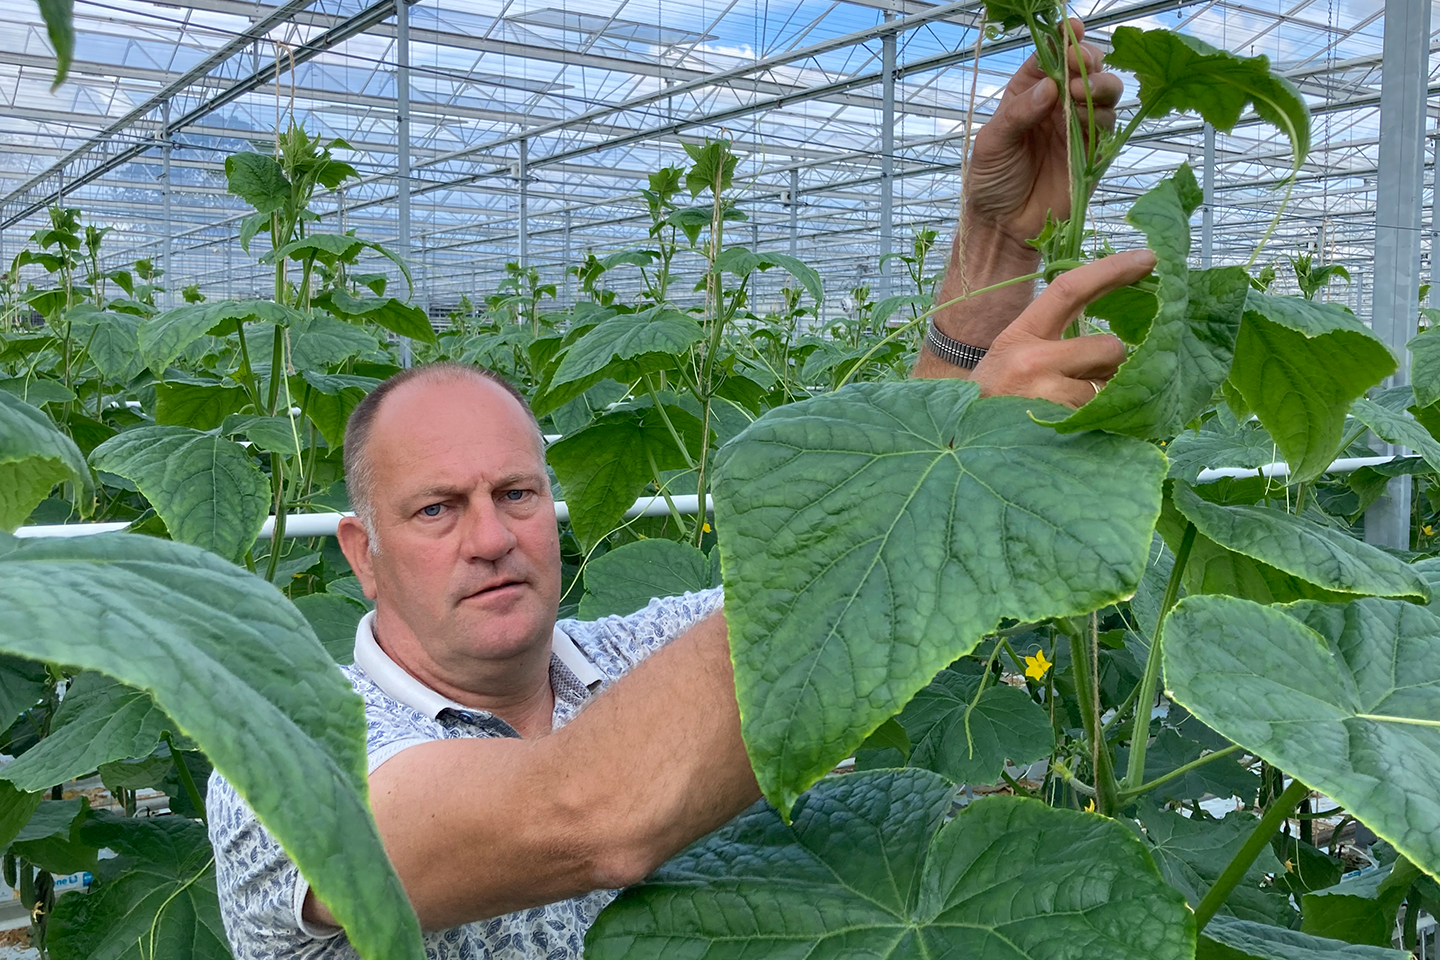 Komkommerteler Martin de Hoog enthousiast over Verimark